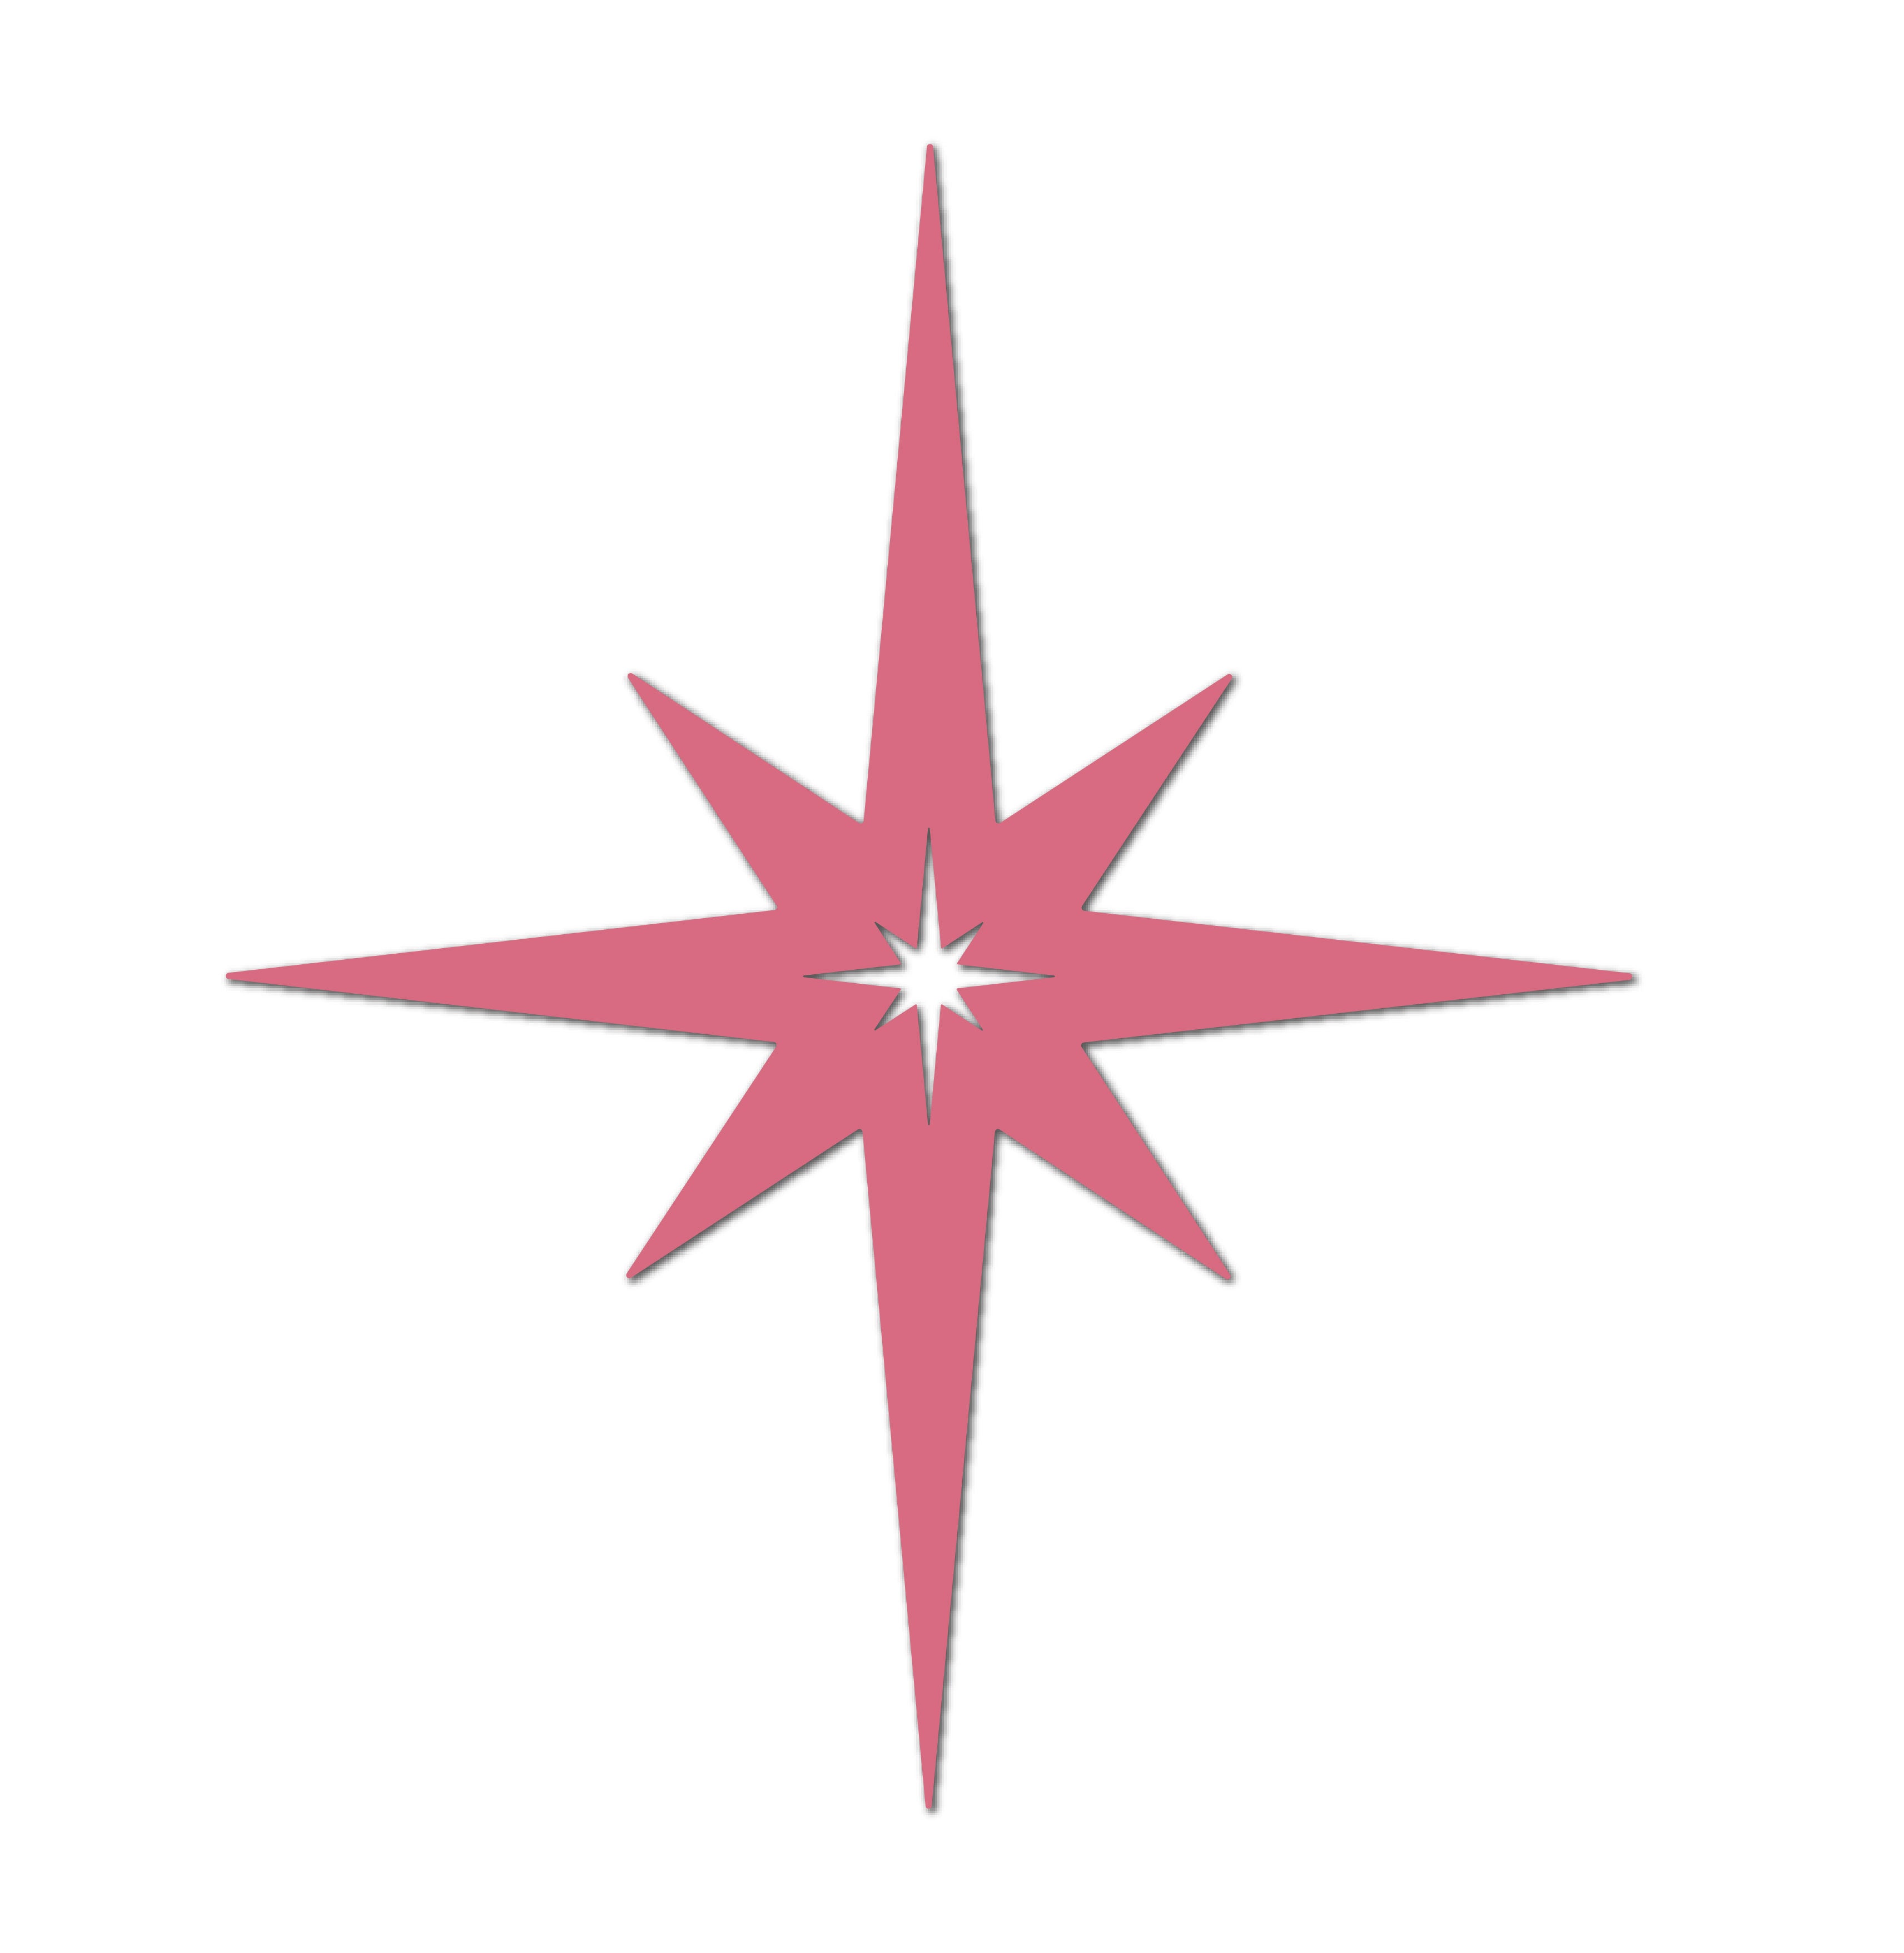 The Sparkle - Mid-century Modern 8 Point Starburst